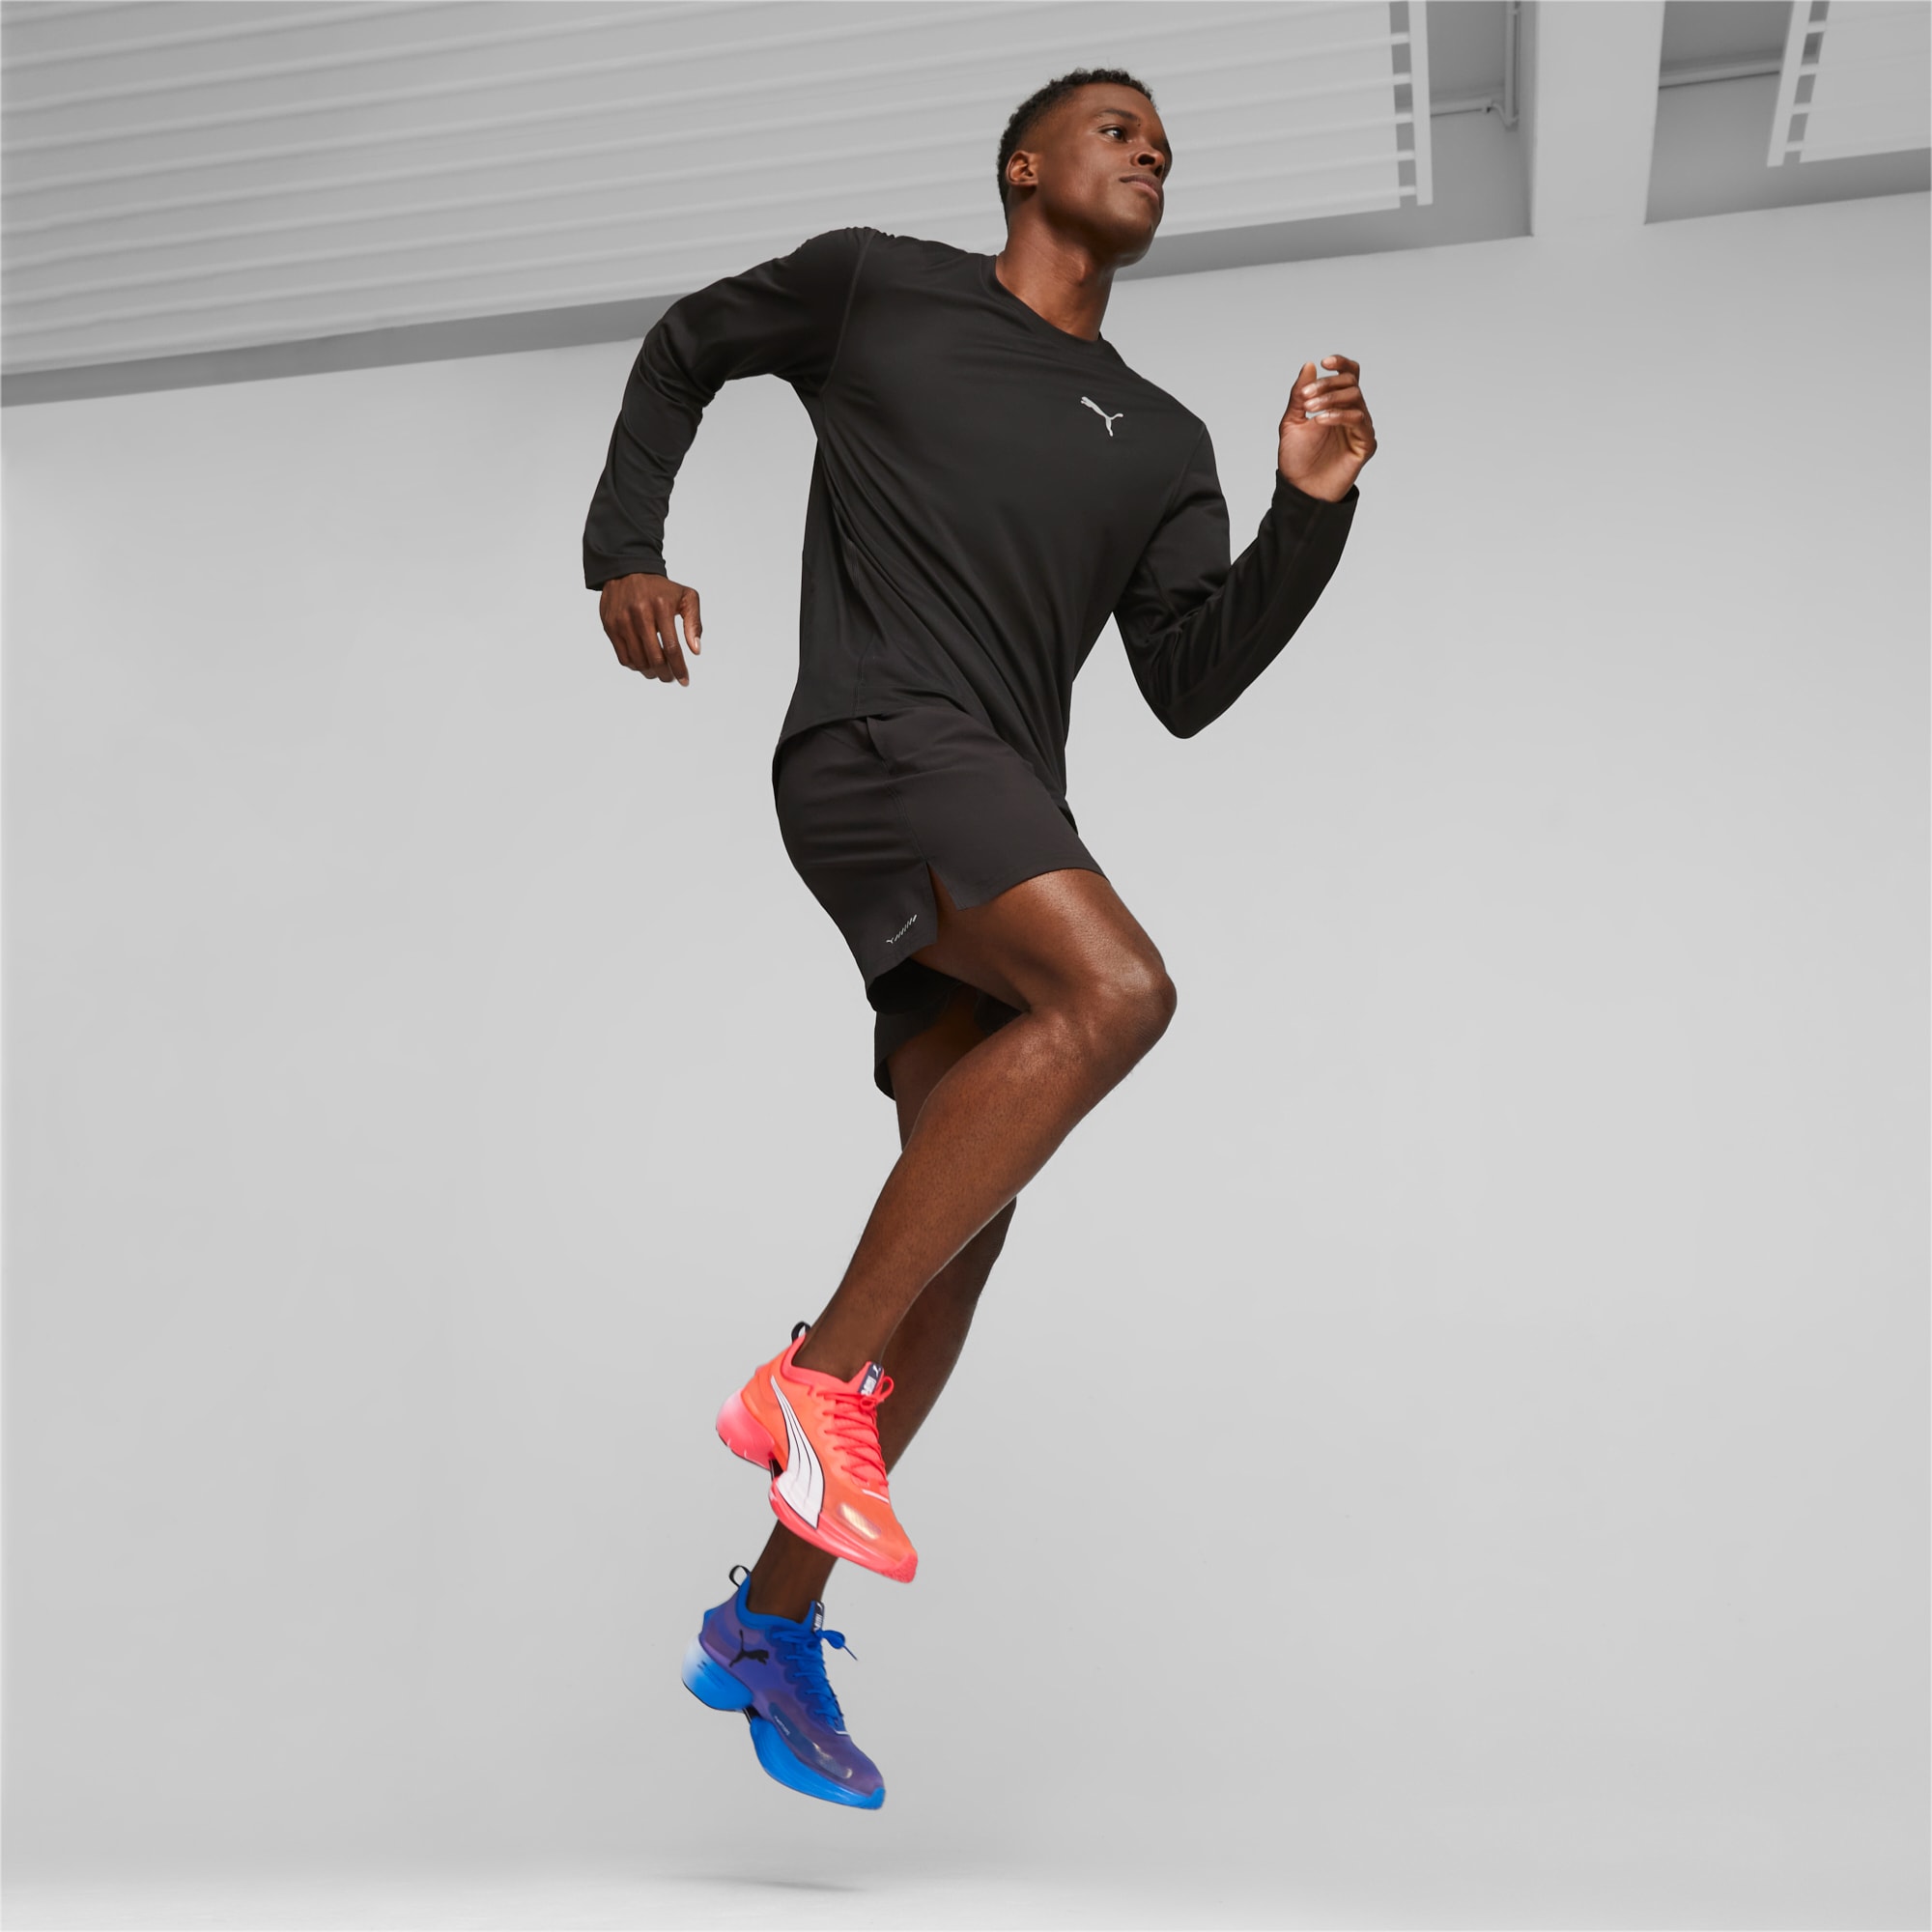 Fast-R NITRO™ Elite Men's Running Shoes | PUMA